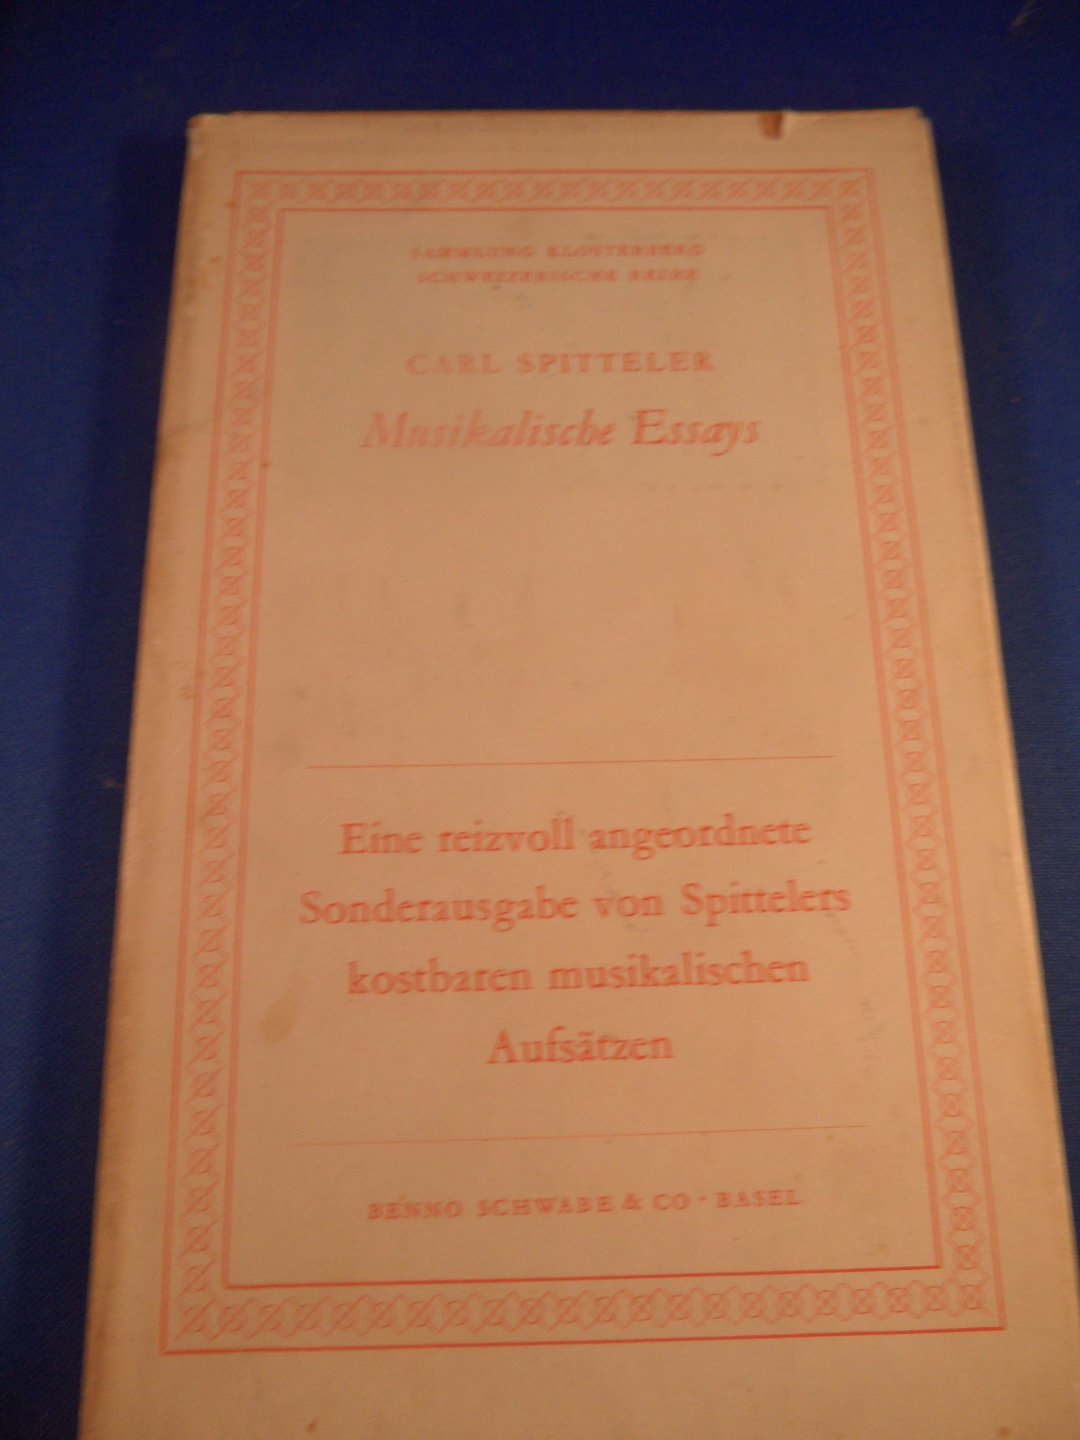 Spitteler, Carl - Musikalische Essays